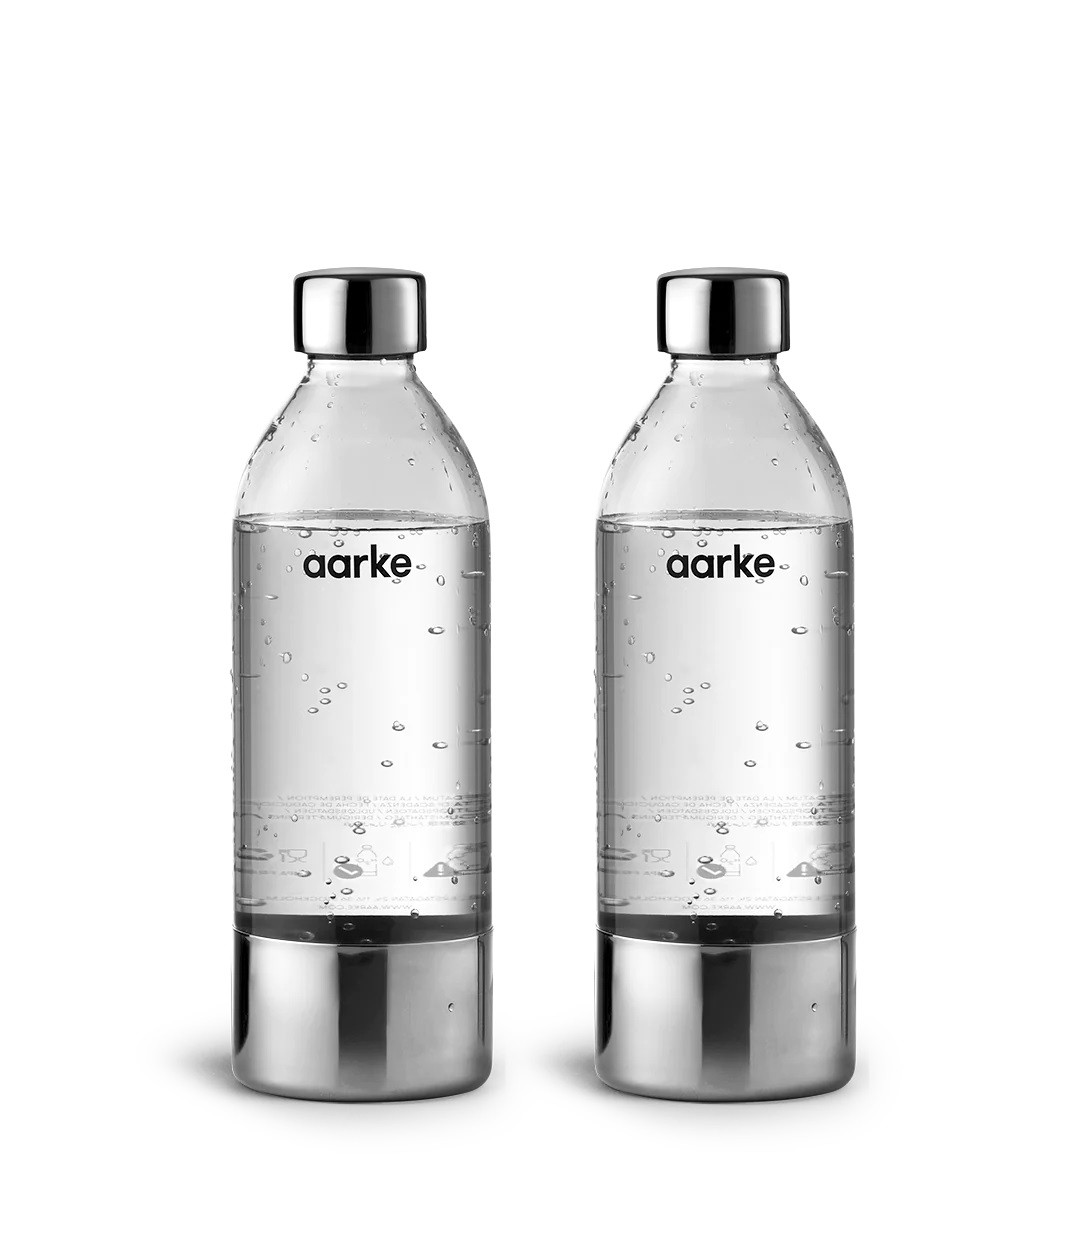  Water Bottle AARKE, 2 pack, 450ml, Polished Steel / A1202 / 4280052